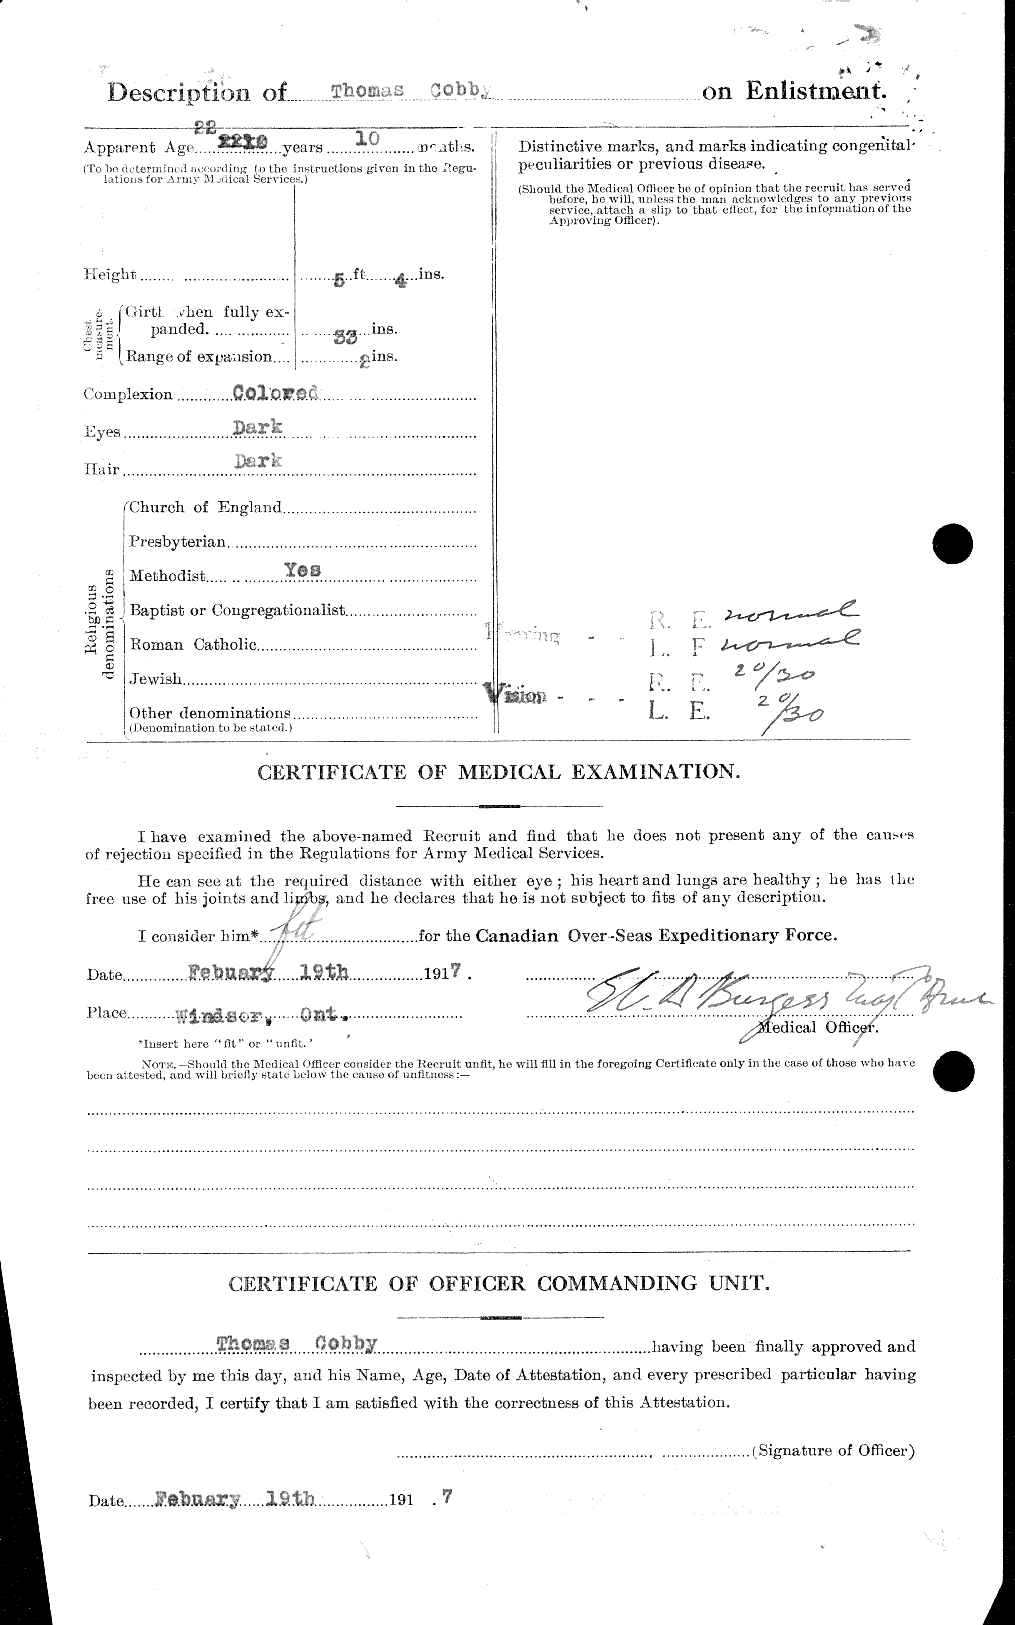 Dossiers du Personnel de la Première Guerre mondiale - CEC 029487b